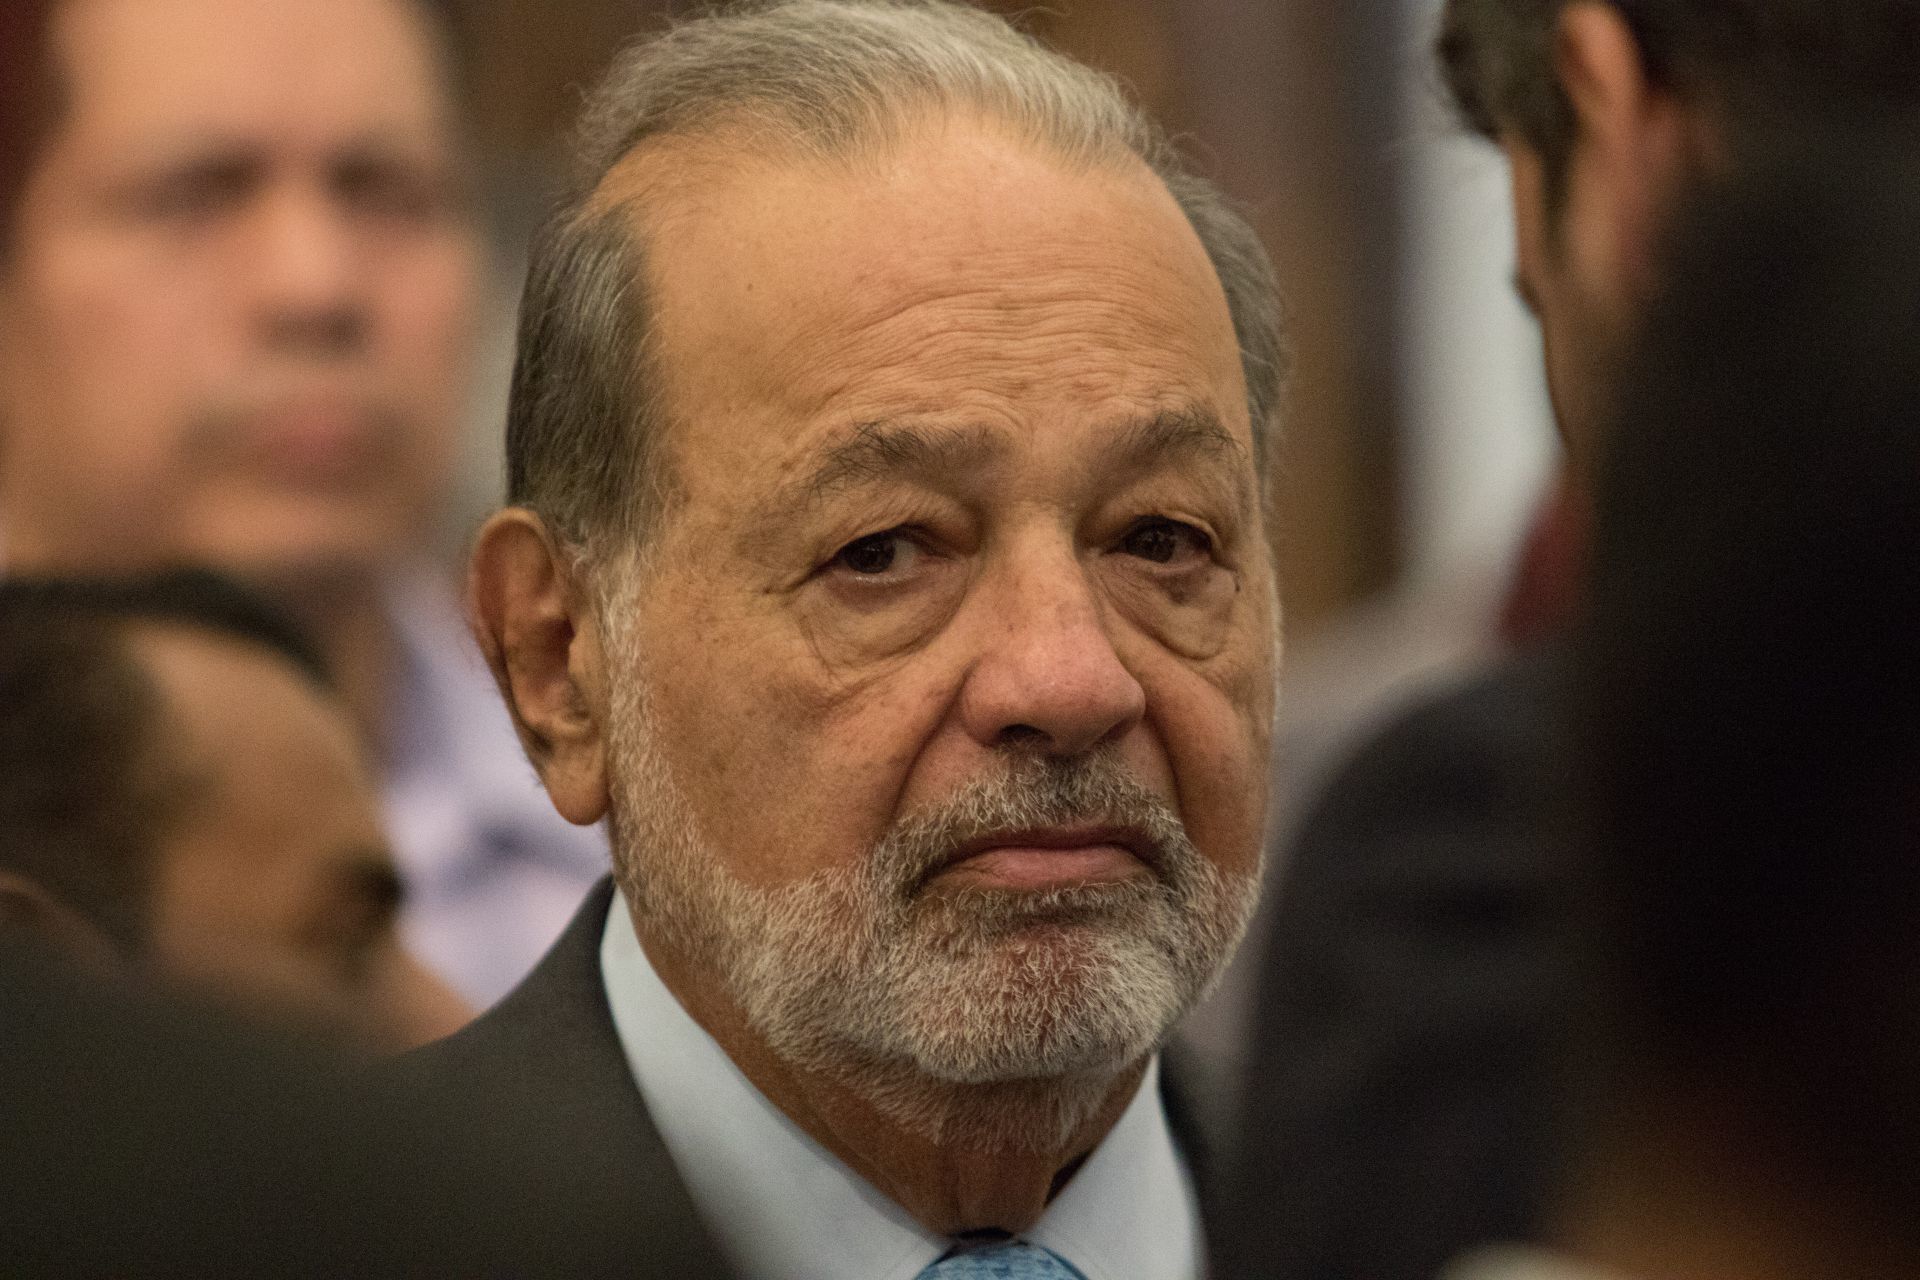  Carlos Slim destacó papel preponderante de la mujer en los negocios: “tienen las mismas o mayores capacidades”